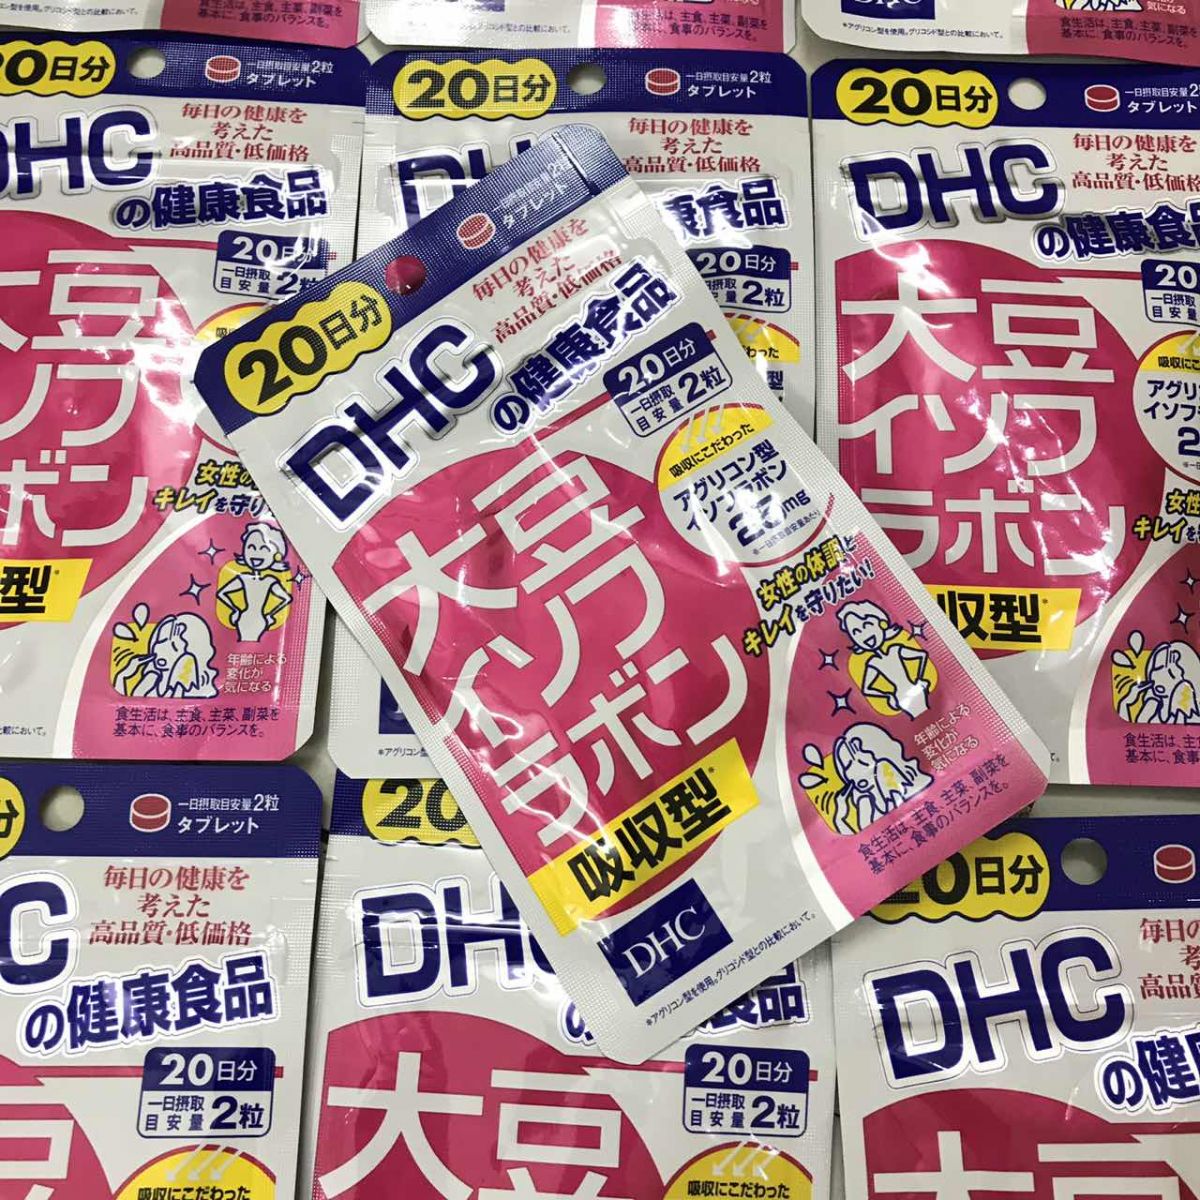 Viên Uống Mầm Đậu Nành DHC Soy Isoflavone Chính Hãng Nhật Bản